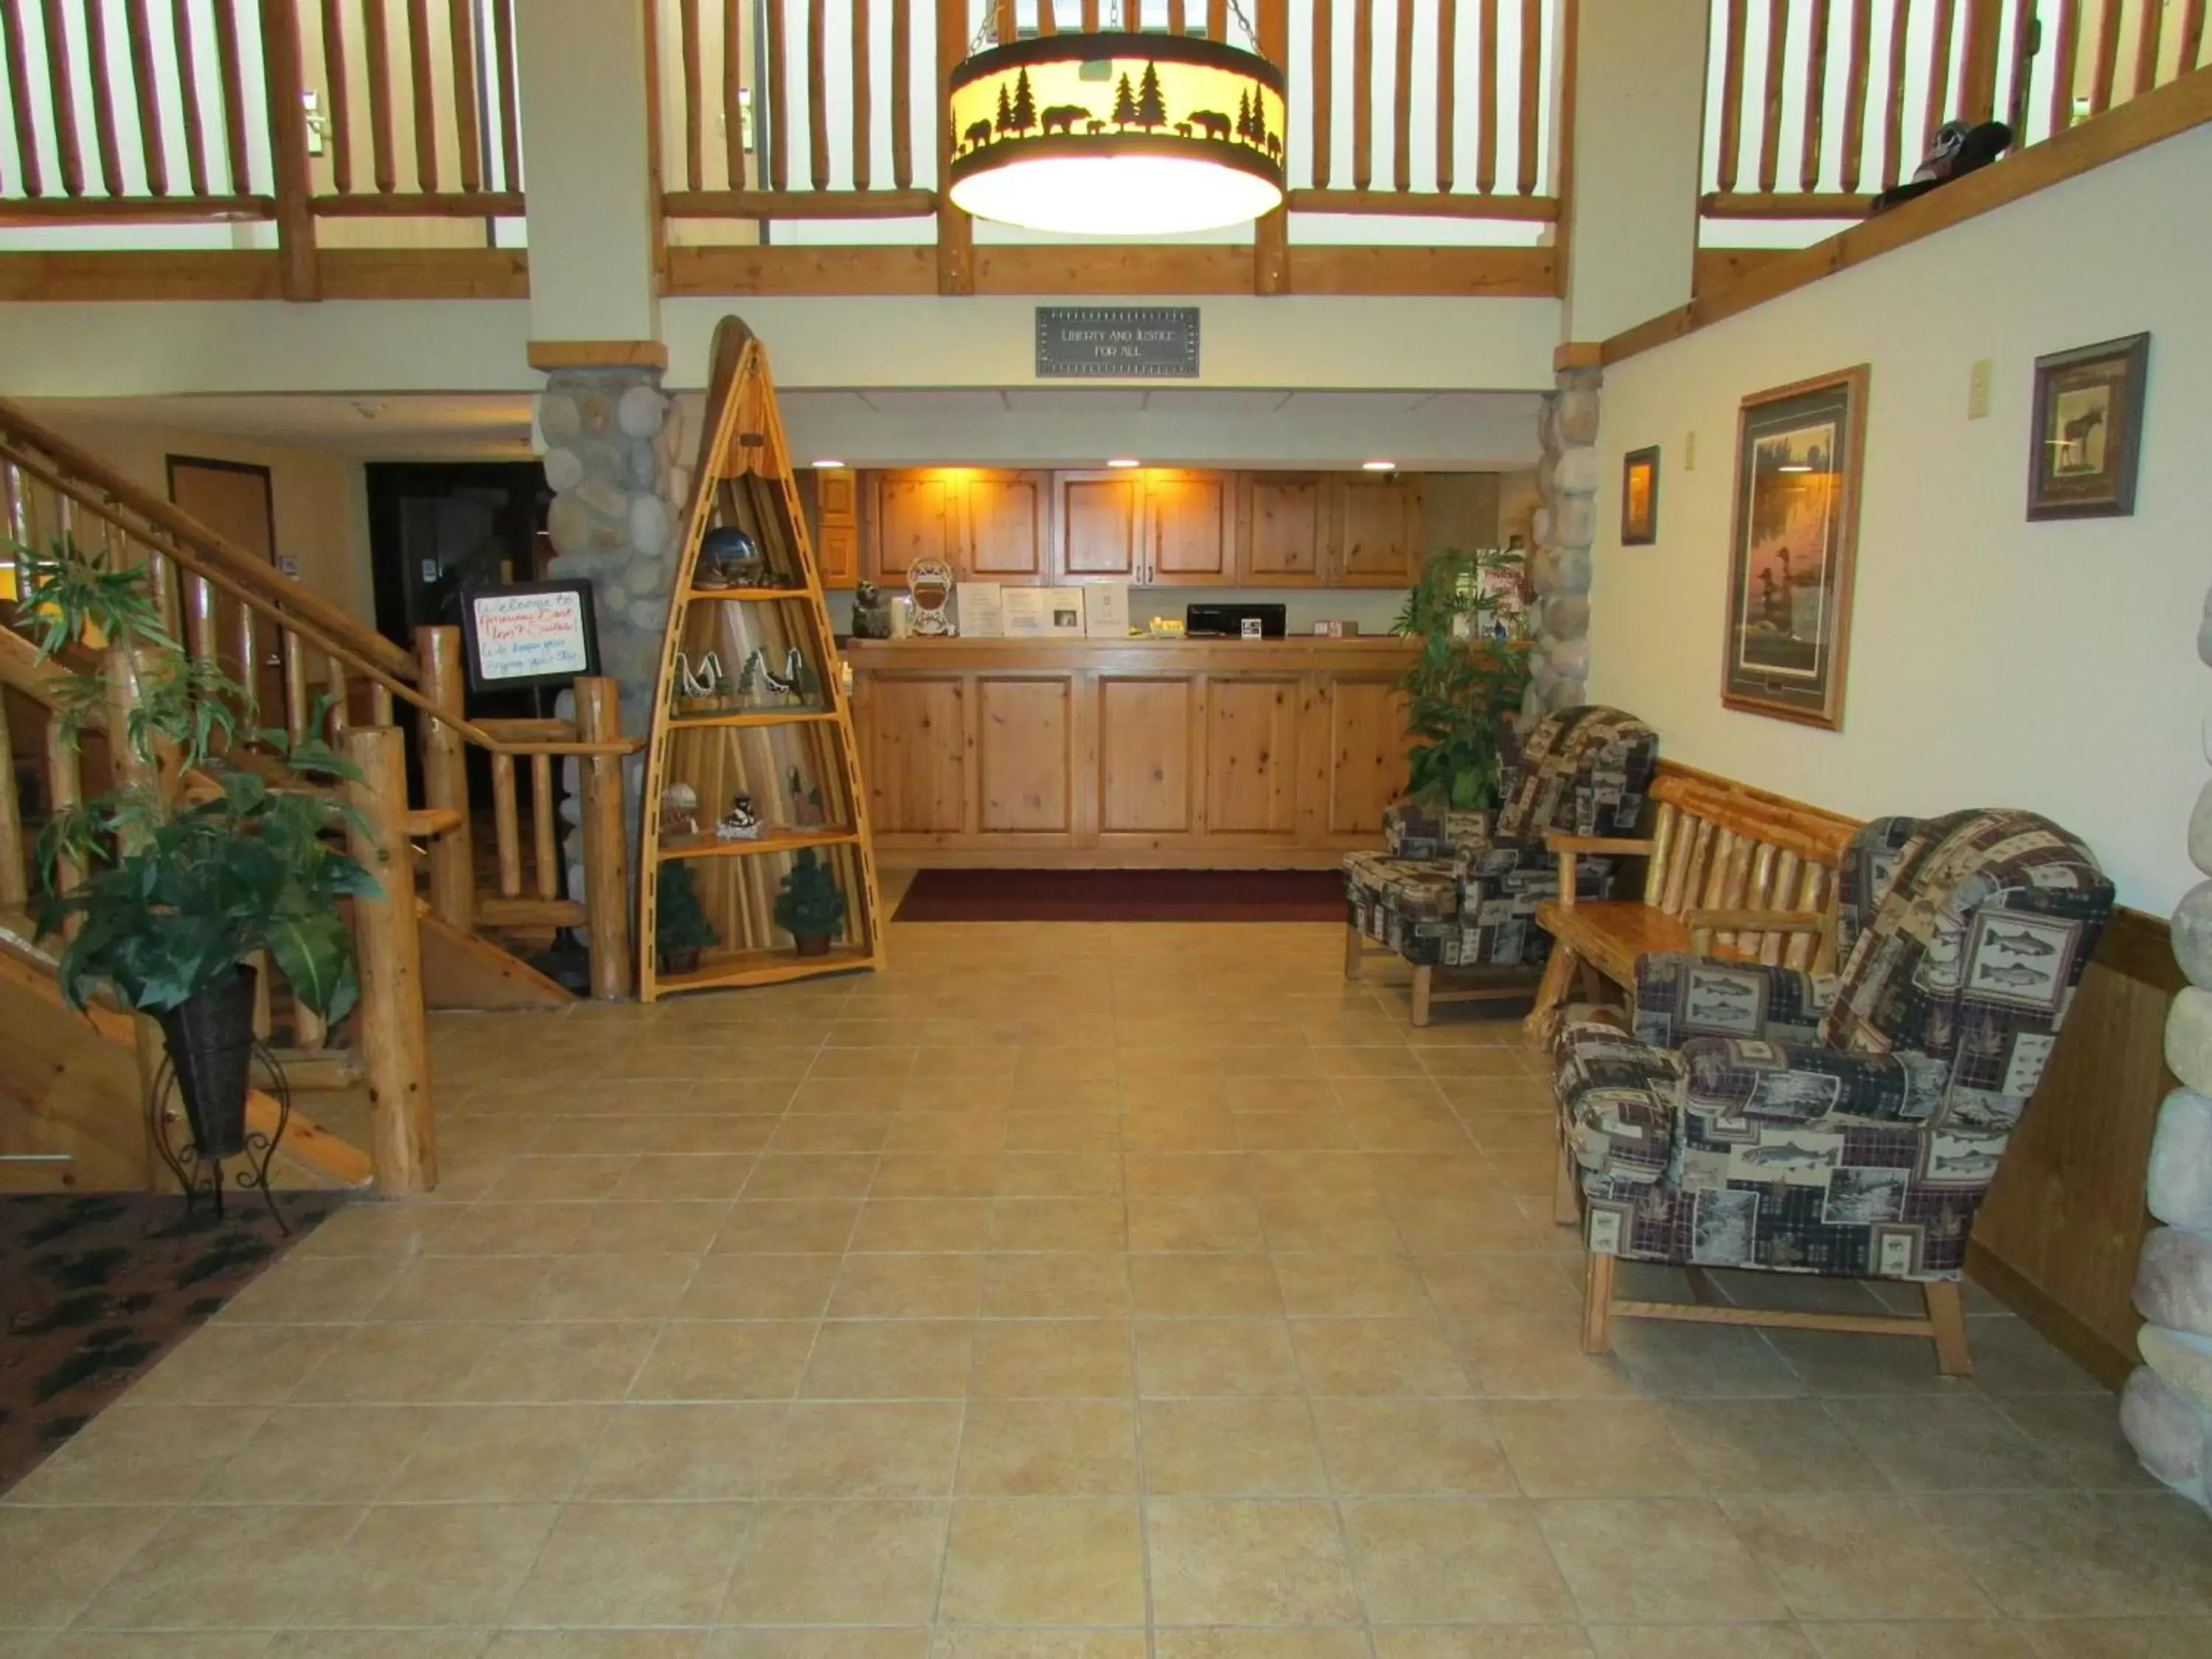 Lobby or reception, Lobby/Reception in AmeriVu Inn & Suites